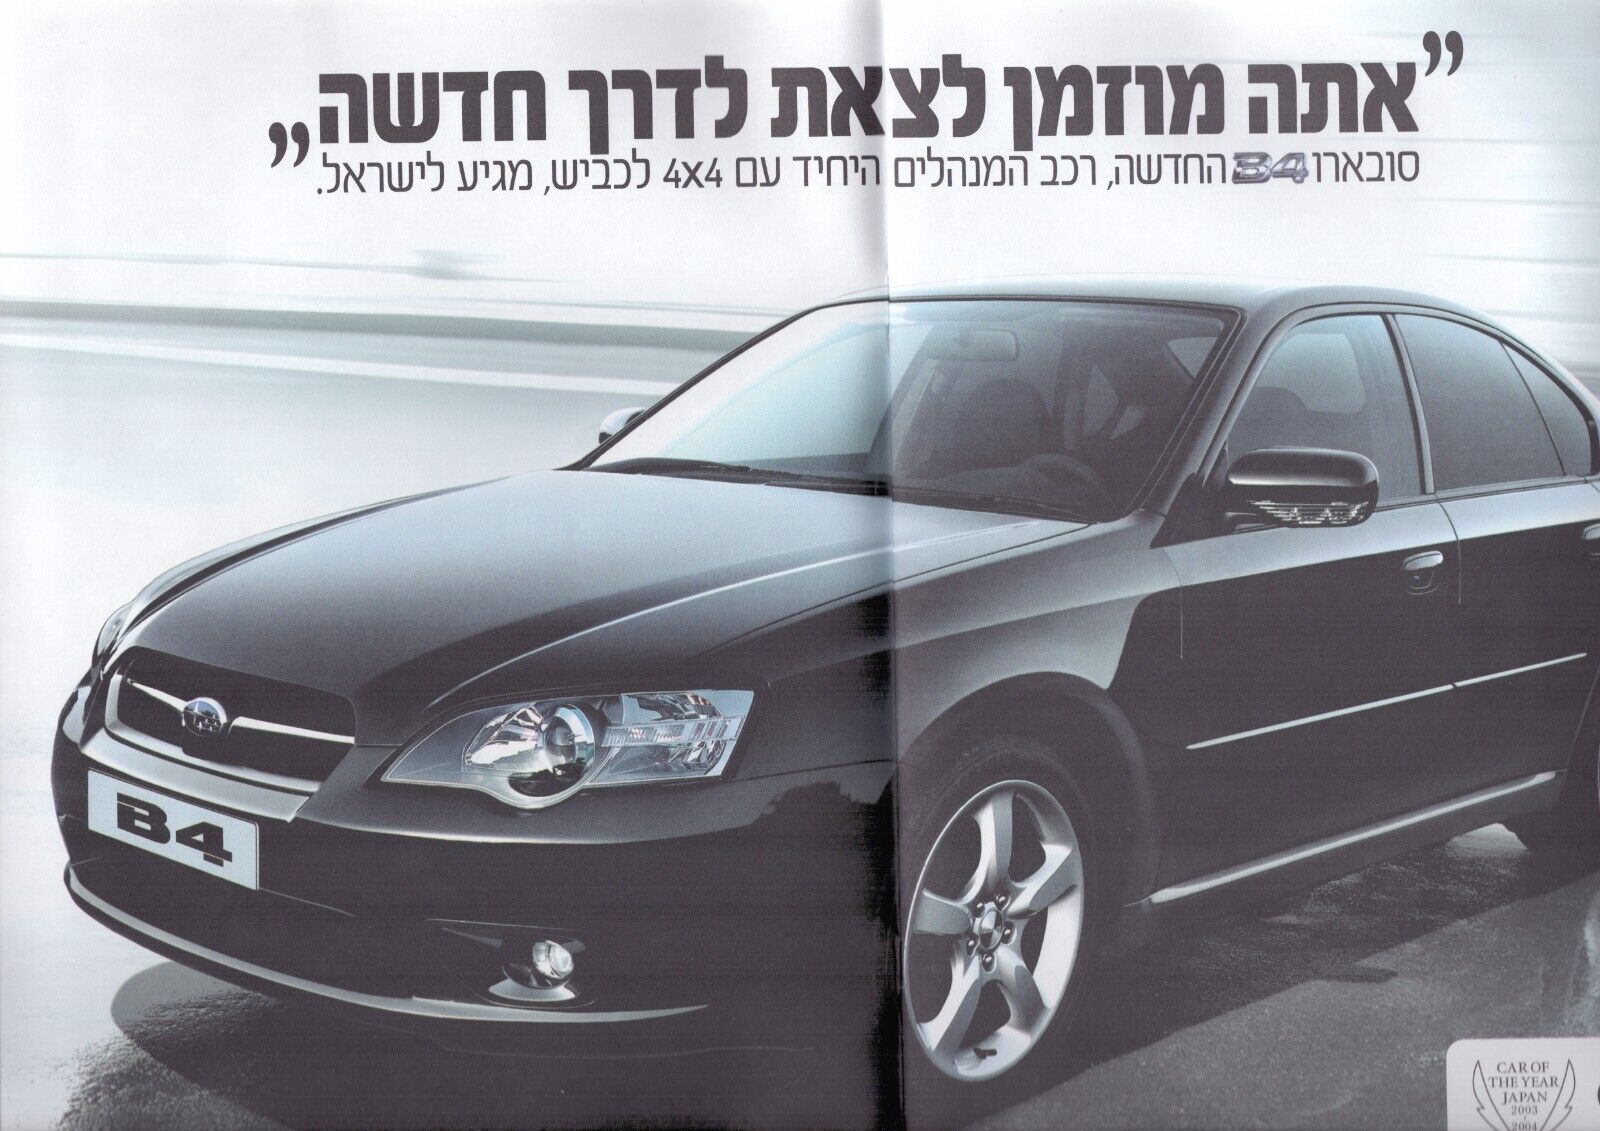 Subaru 2004 AD brochure Catalog ISRAEL Hebrew VINTAGE